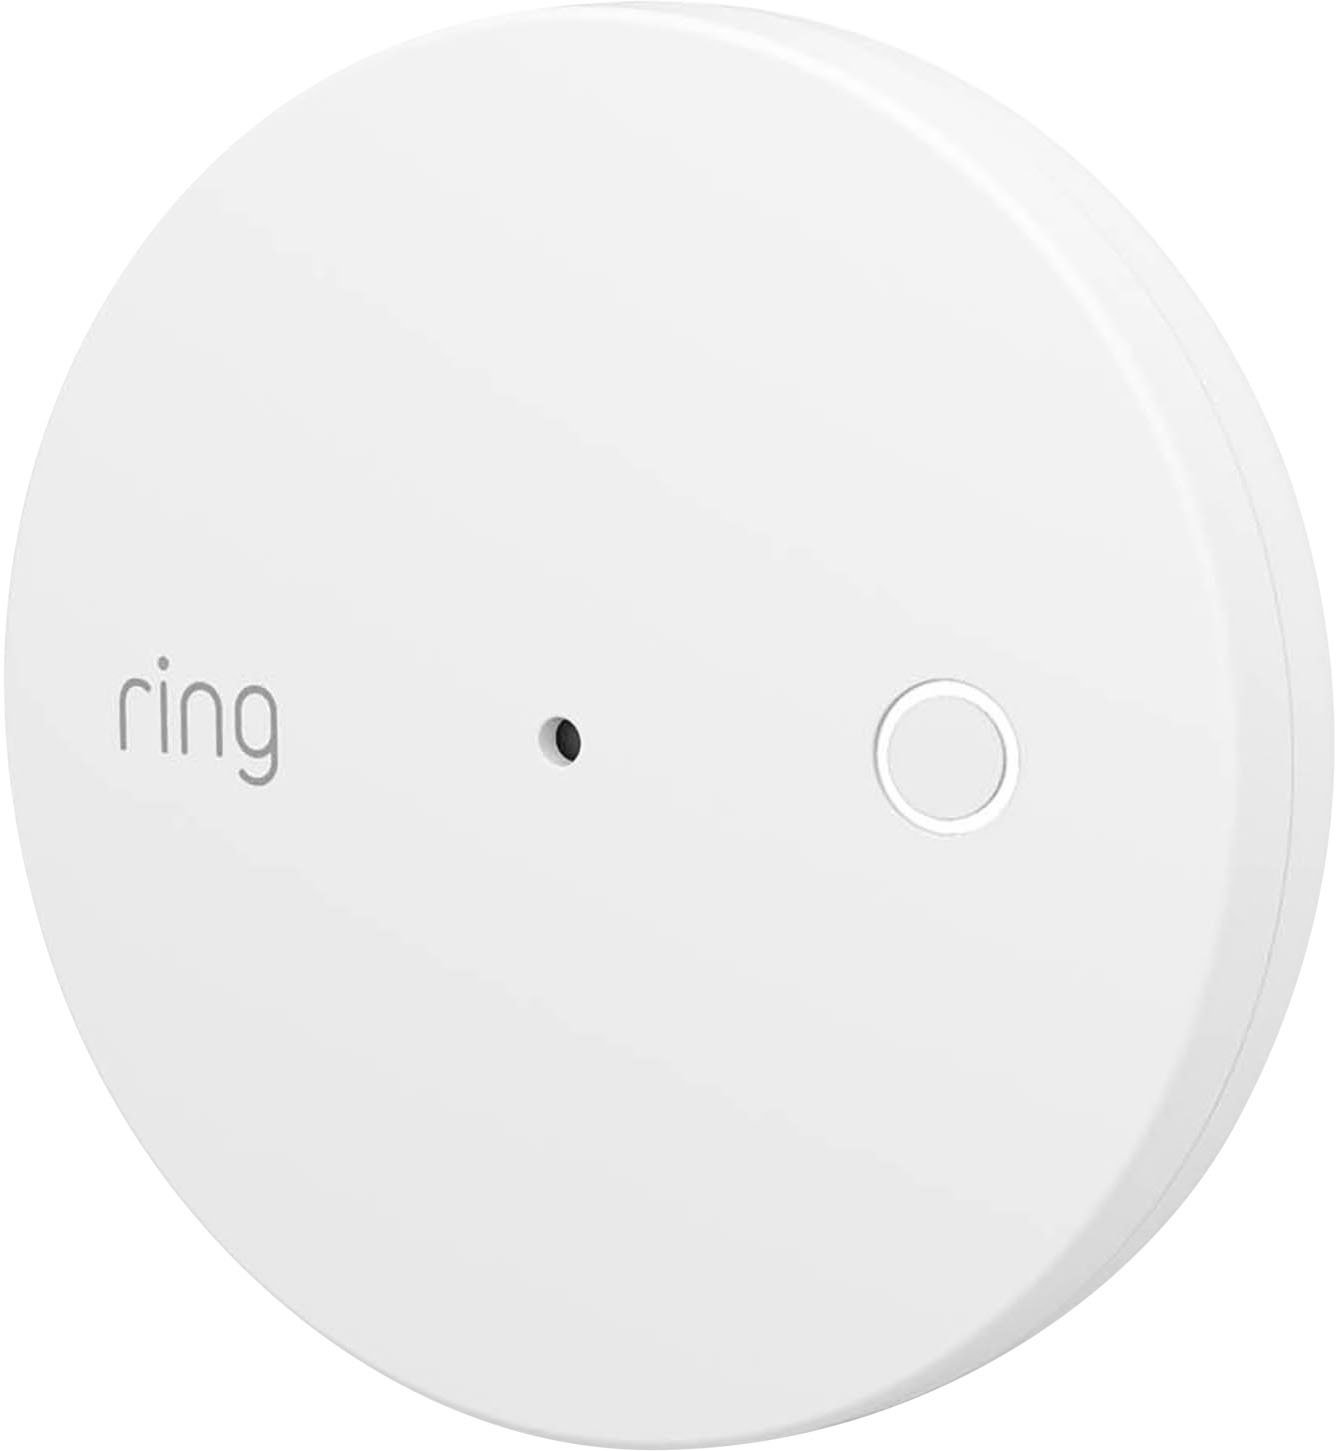 Left View: Ring - Alarm Glass Break Sensor (2-Pack) - White